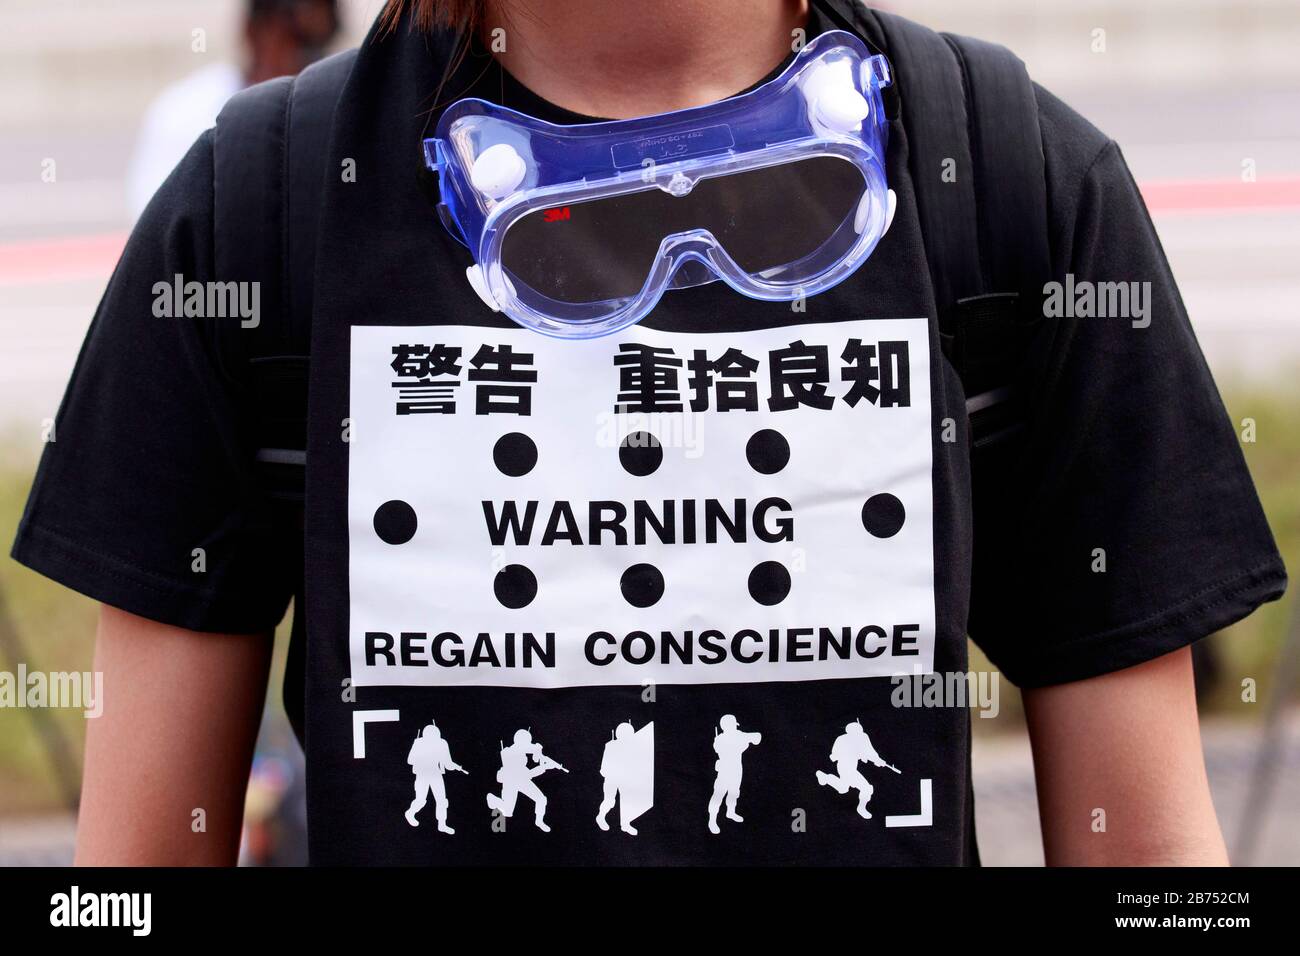 Les manifestants construisent à nouveau le mur Lennon à Hong Kong. Banque D'Images